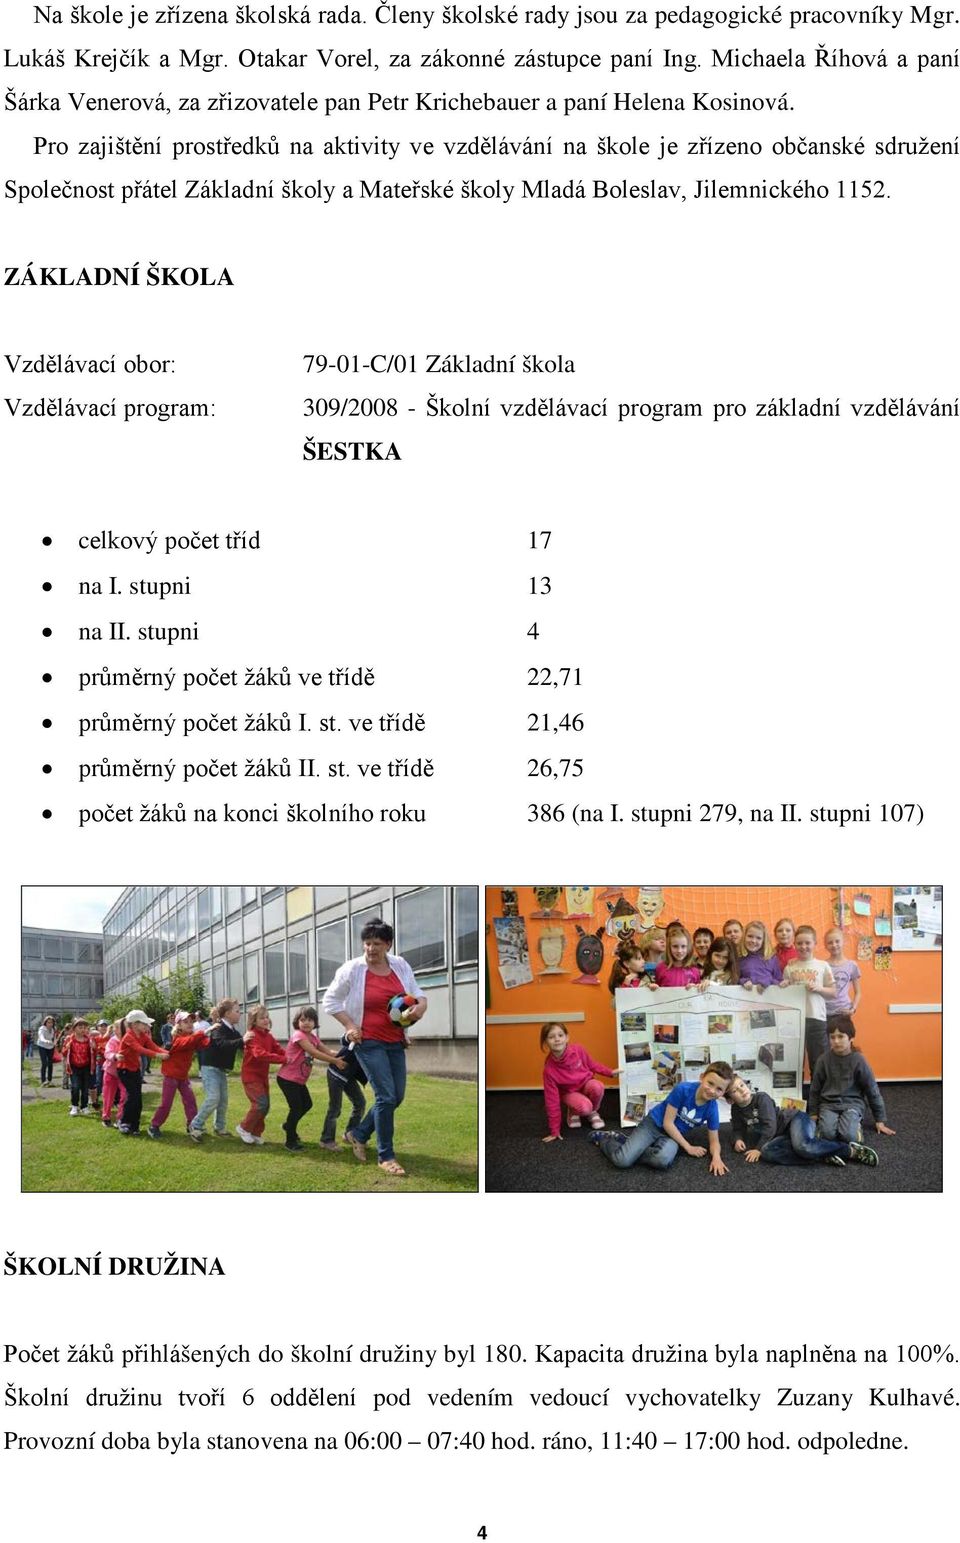 Pro zajištění prostředků na aktivity ve vzdělávání na škole je zřízeno občanské sdružení Společnost přátel Základní školy a Mateřské školy Mladá Boleslav, Jilemnického 1152.